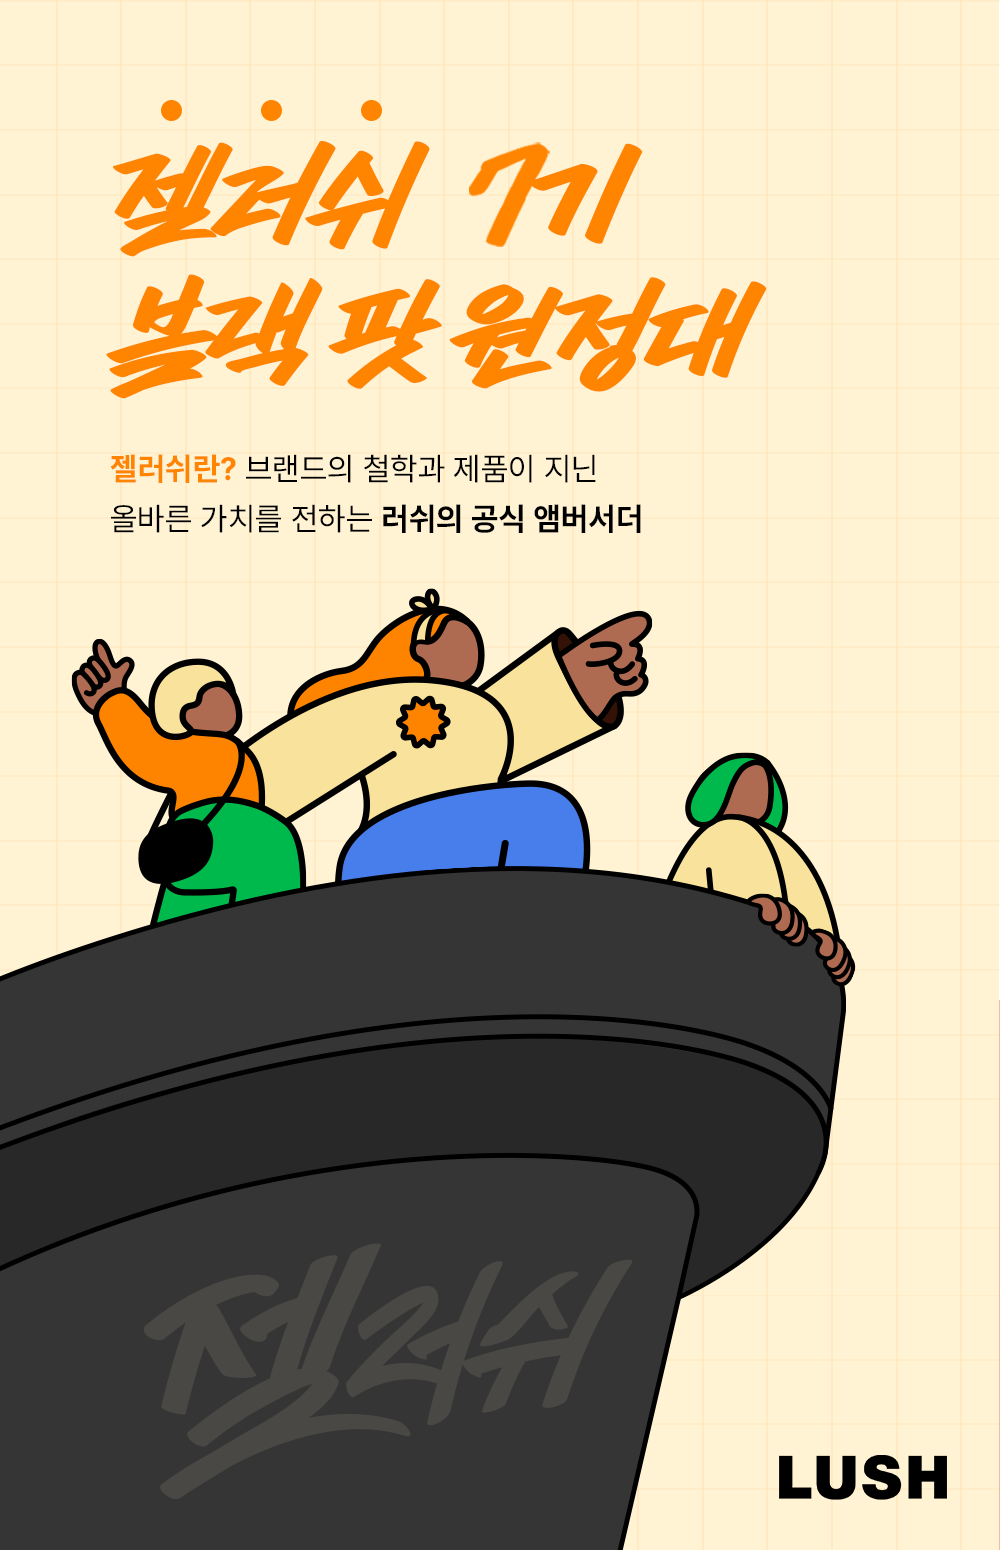 러쉬코리아 공식 앰버서더 젤러쉬 7기 블랙 팟 원정대 모집